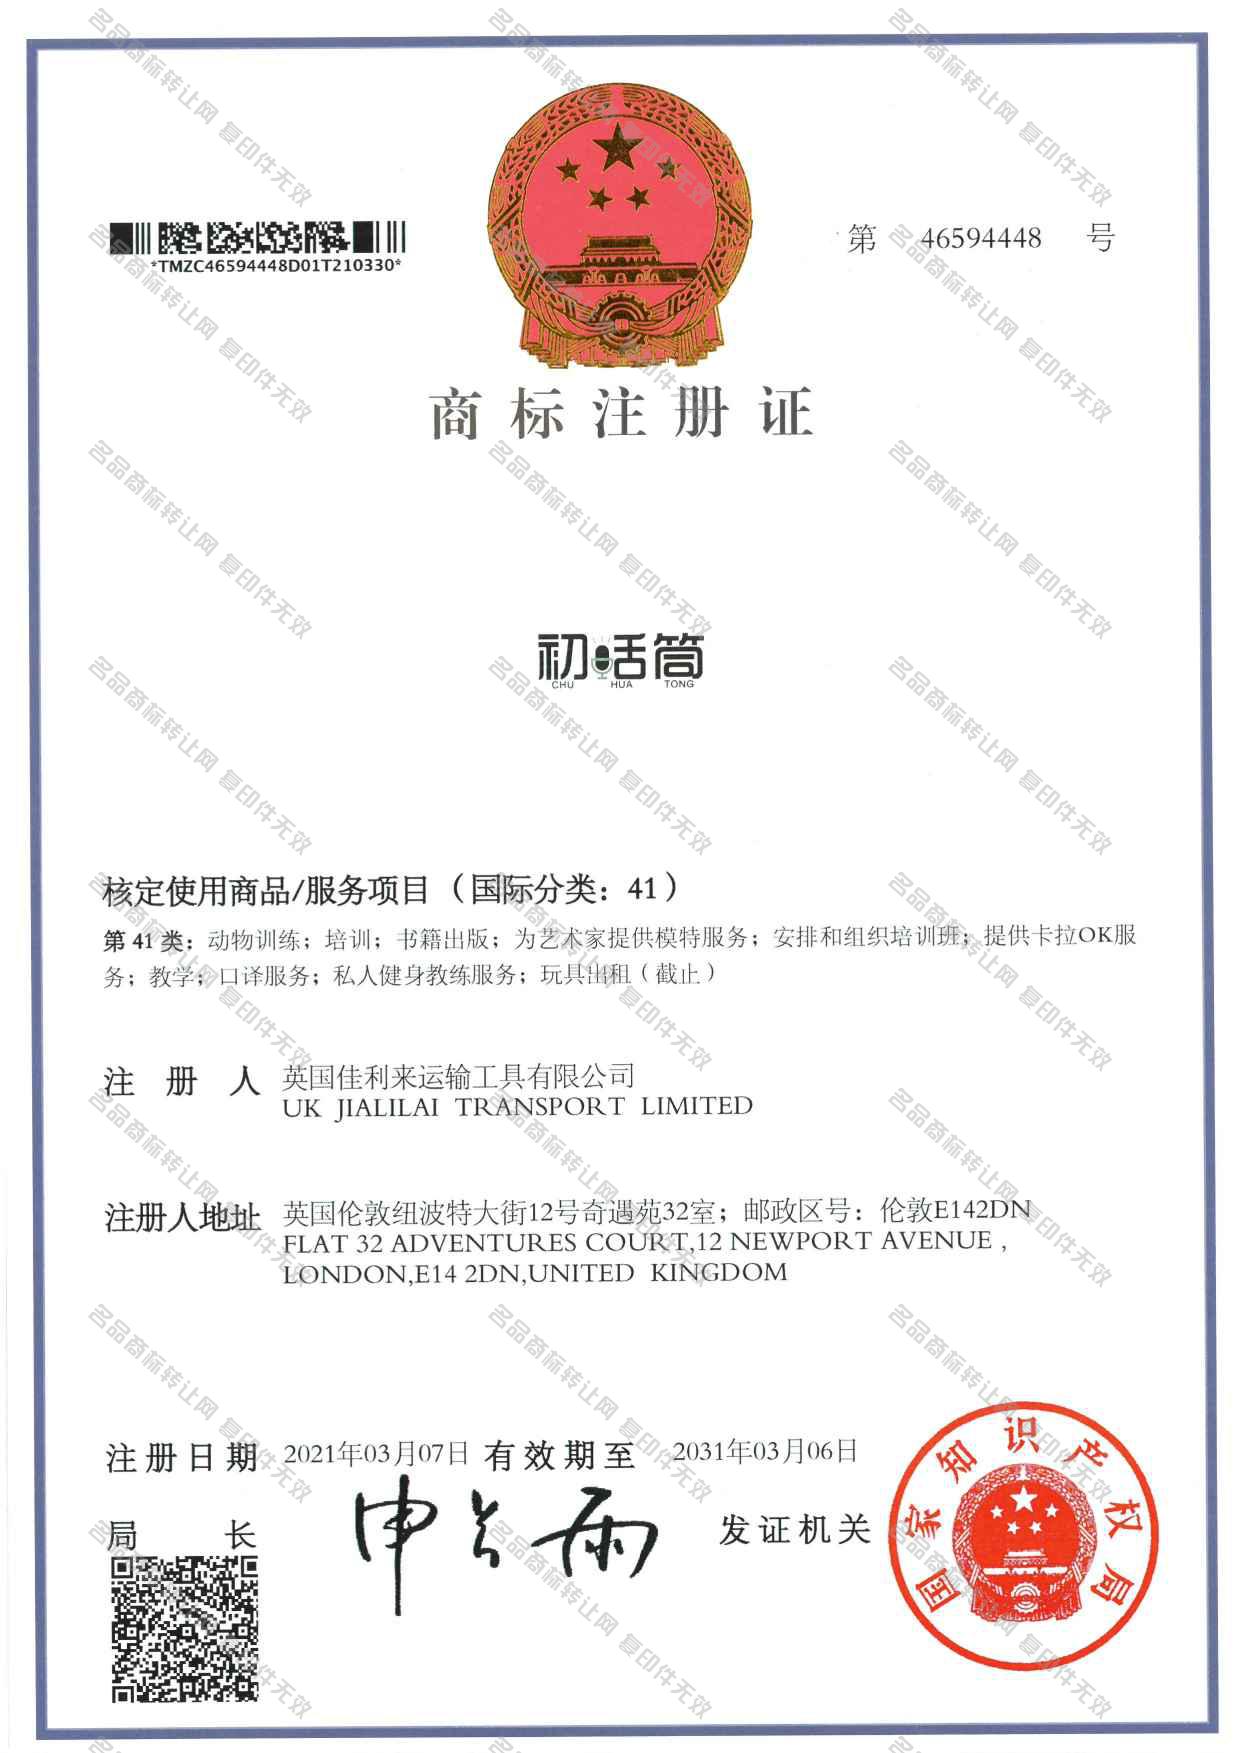 初舌筒 CHU HUA TONG注册证